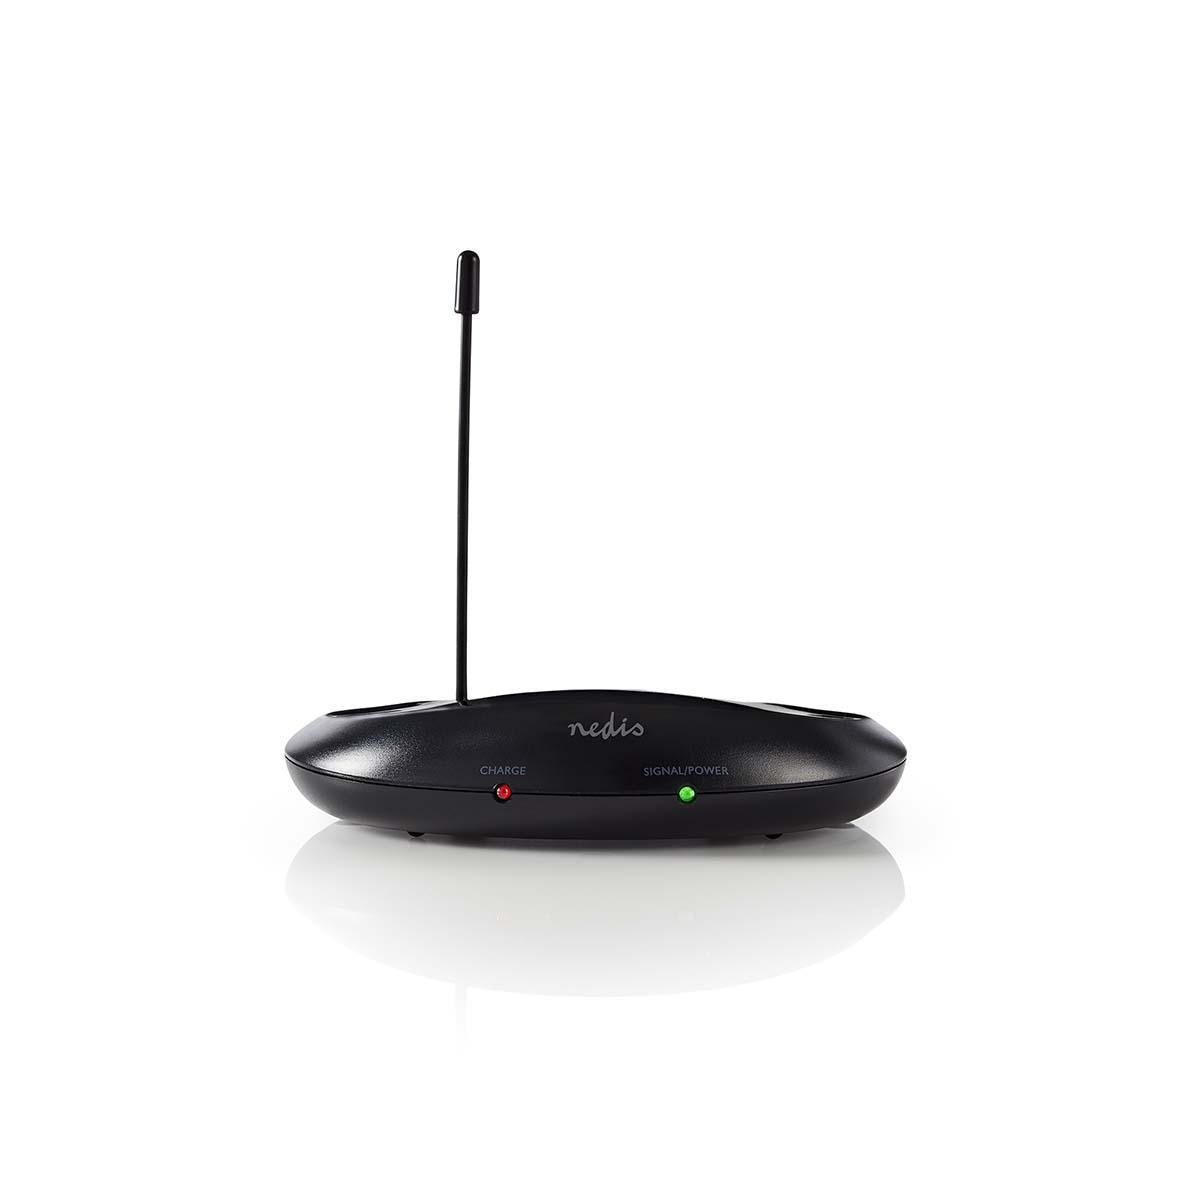 Nedis Wireless Over-Ear TV Headphones - GameStore.mt | Powered by Flutisat